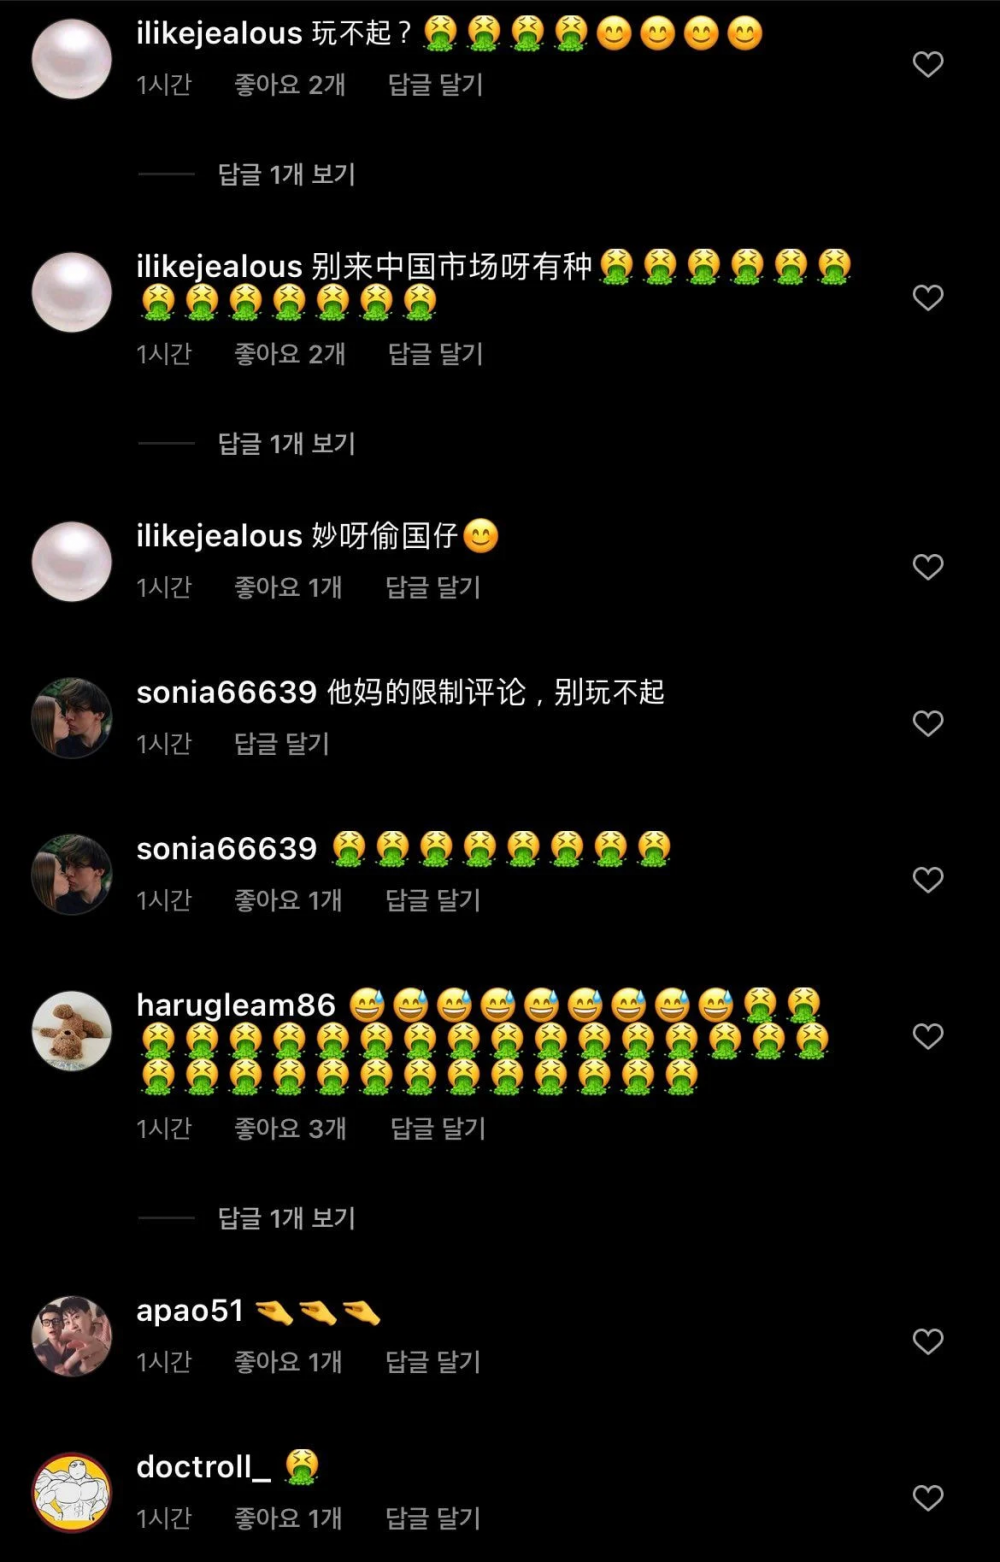 Китайские нетизены напали на инстаграм-аккаунт BTS после того, как RM поддержал корейскую команду по шорт-треку